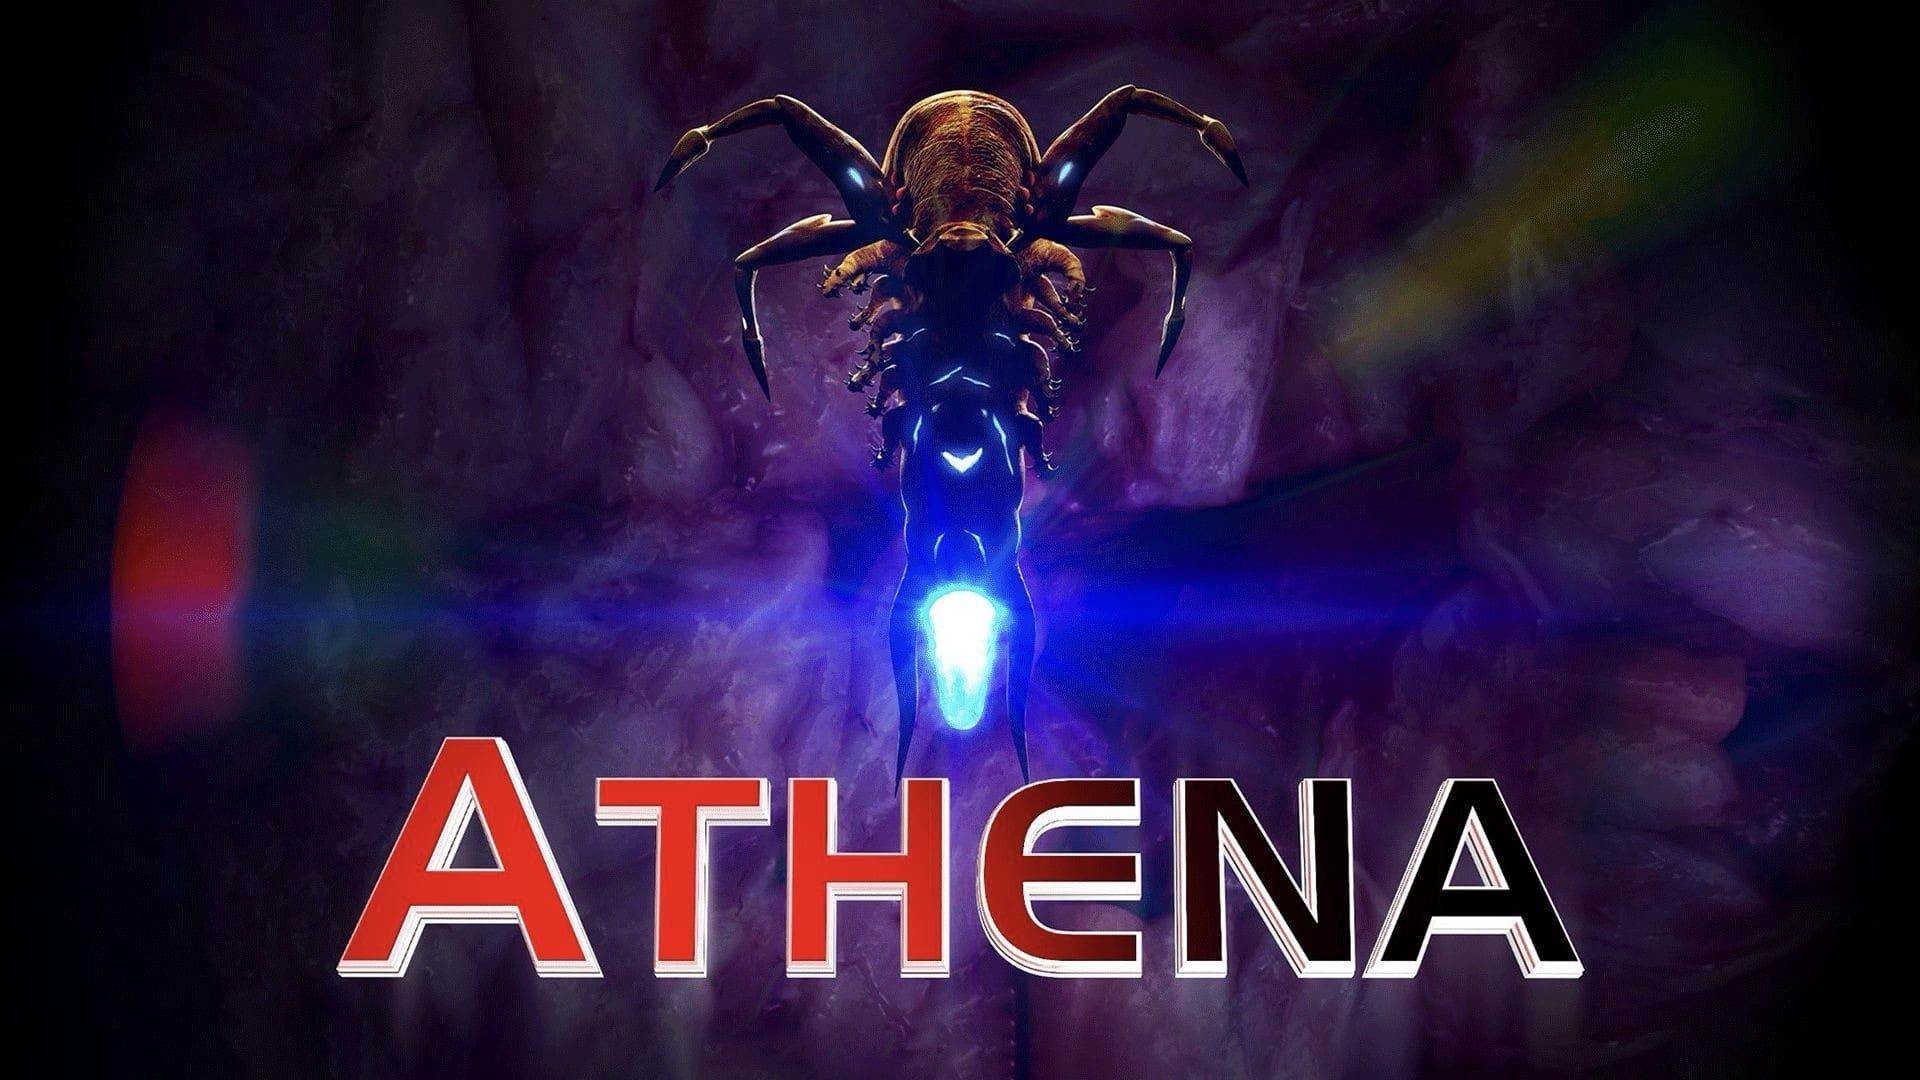 Athena background